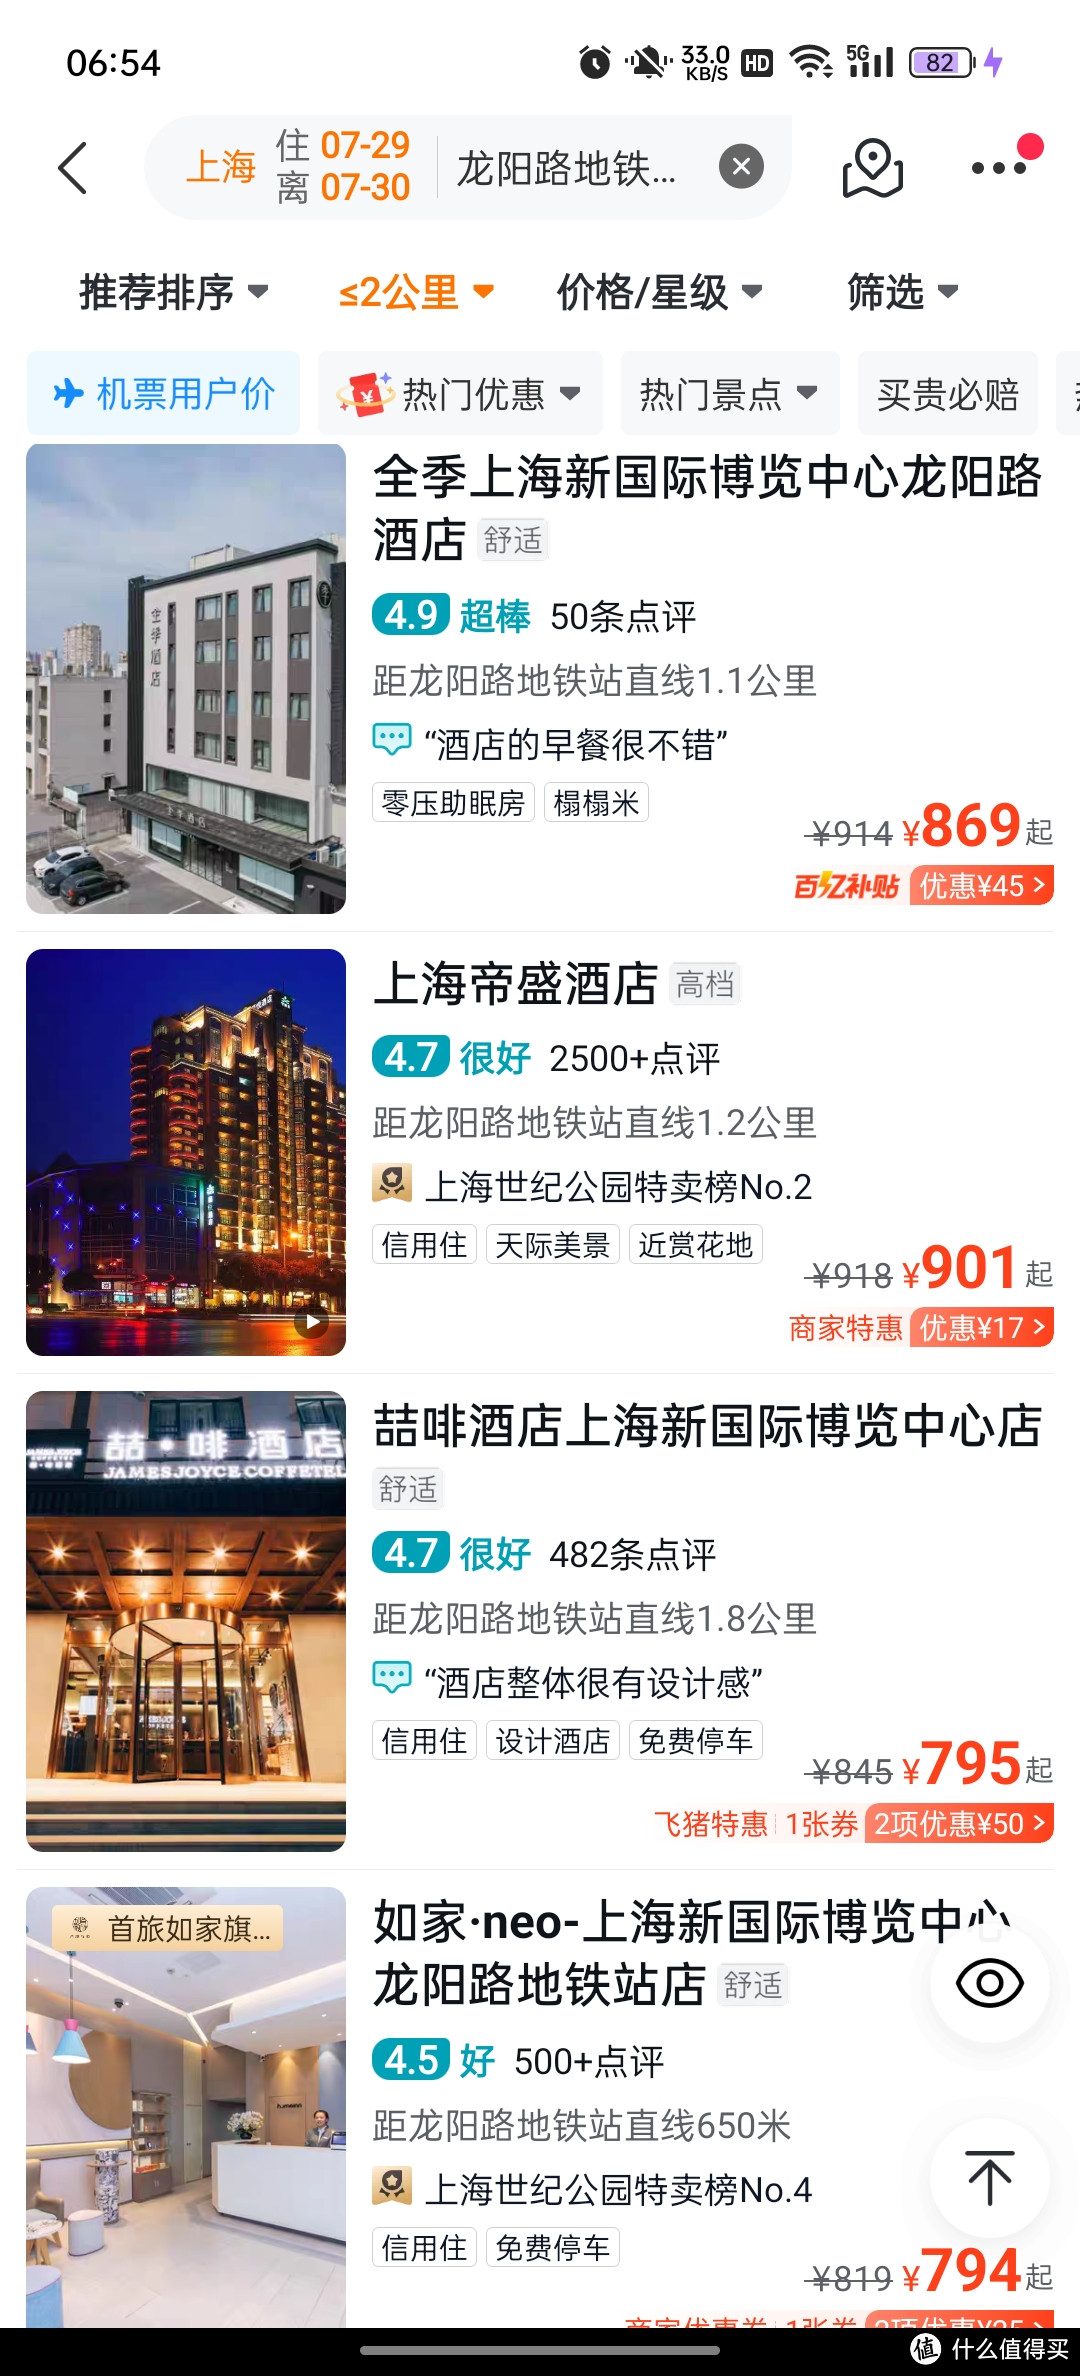 离上海新国际博览中心仅2公里的舒适酒店体验——上海证大美爵酒店